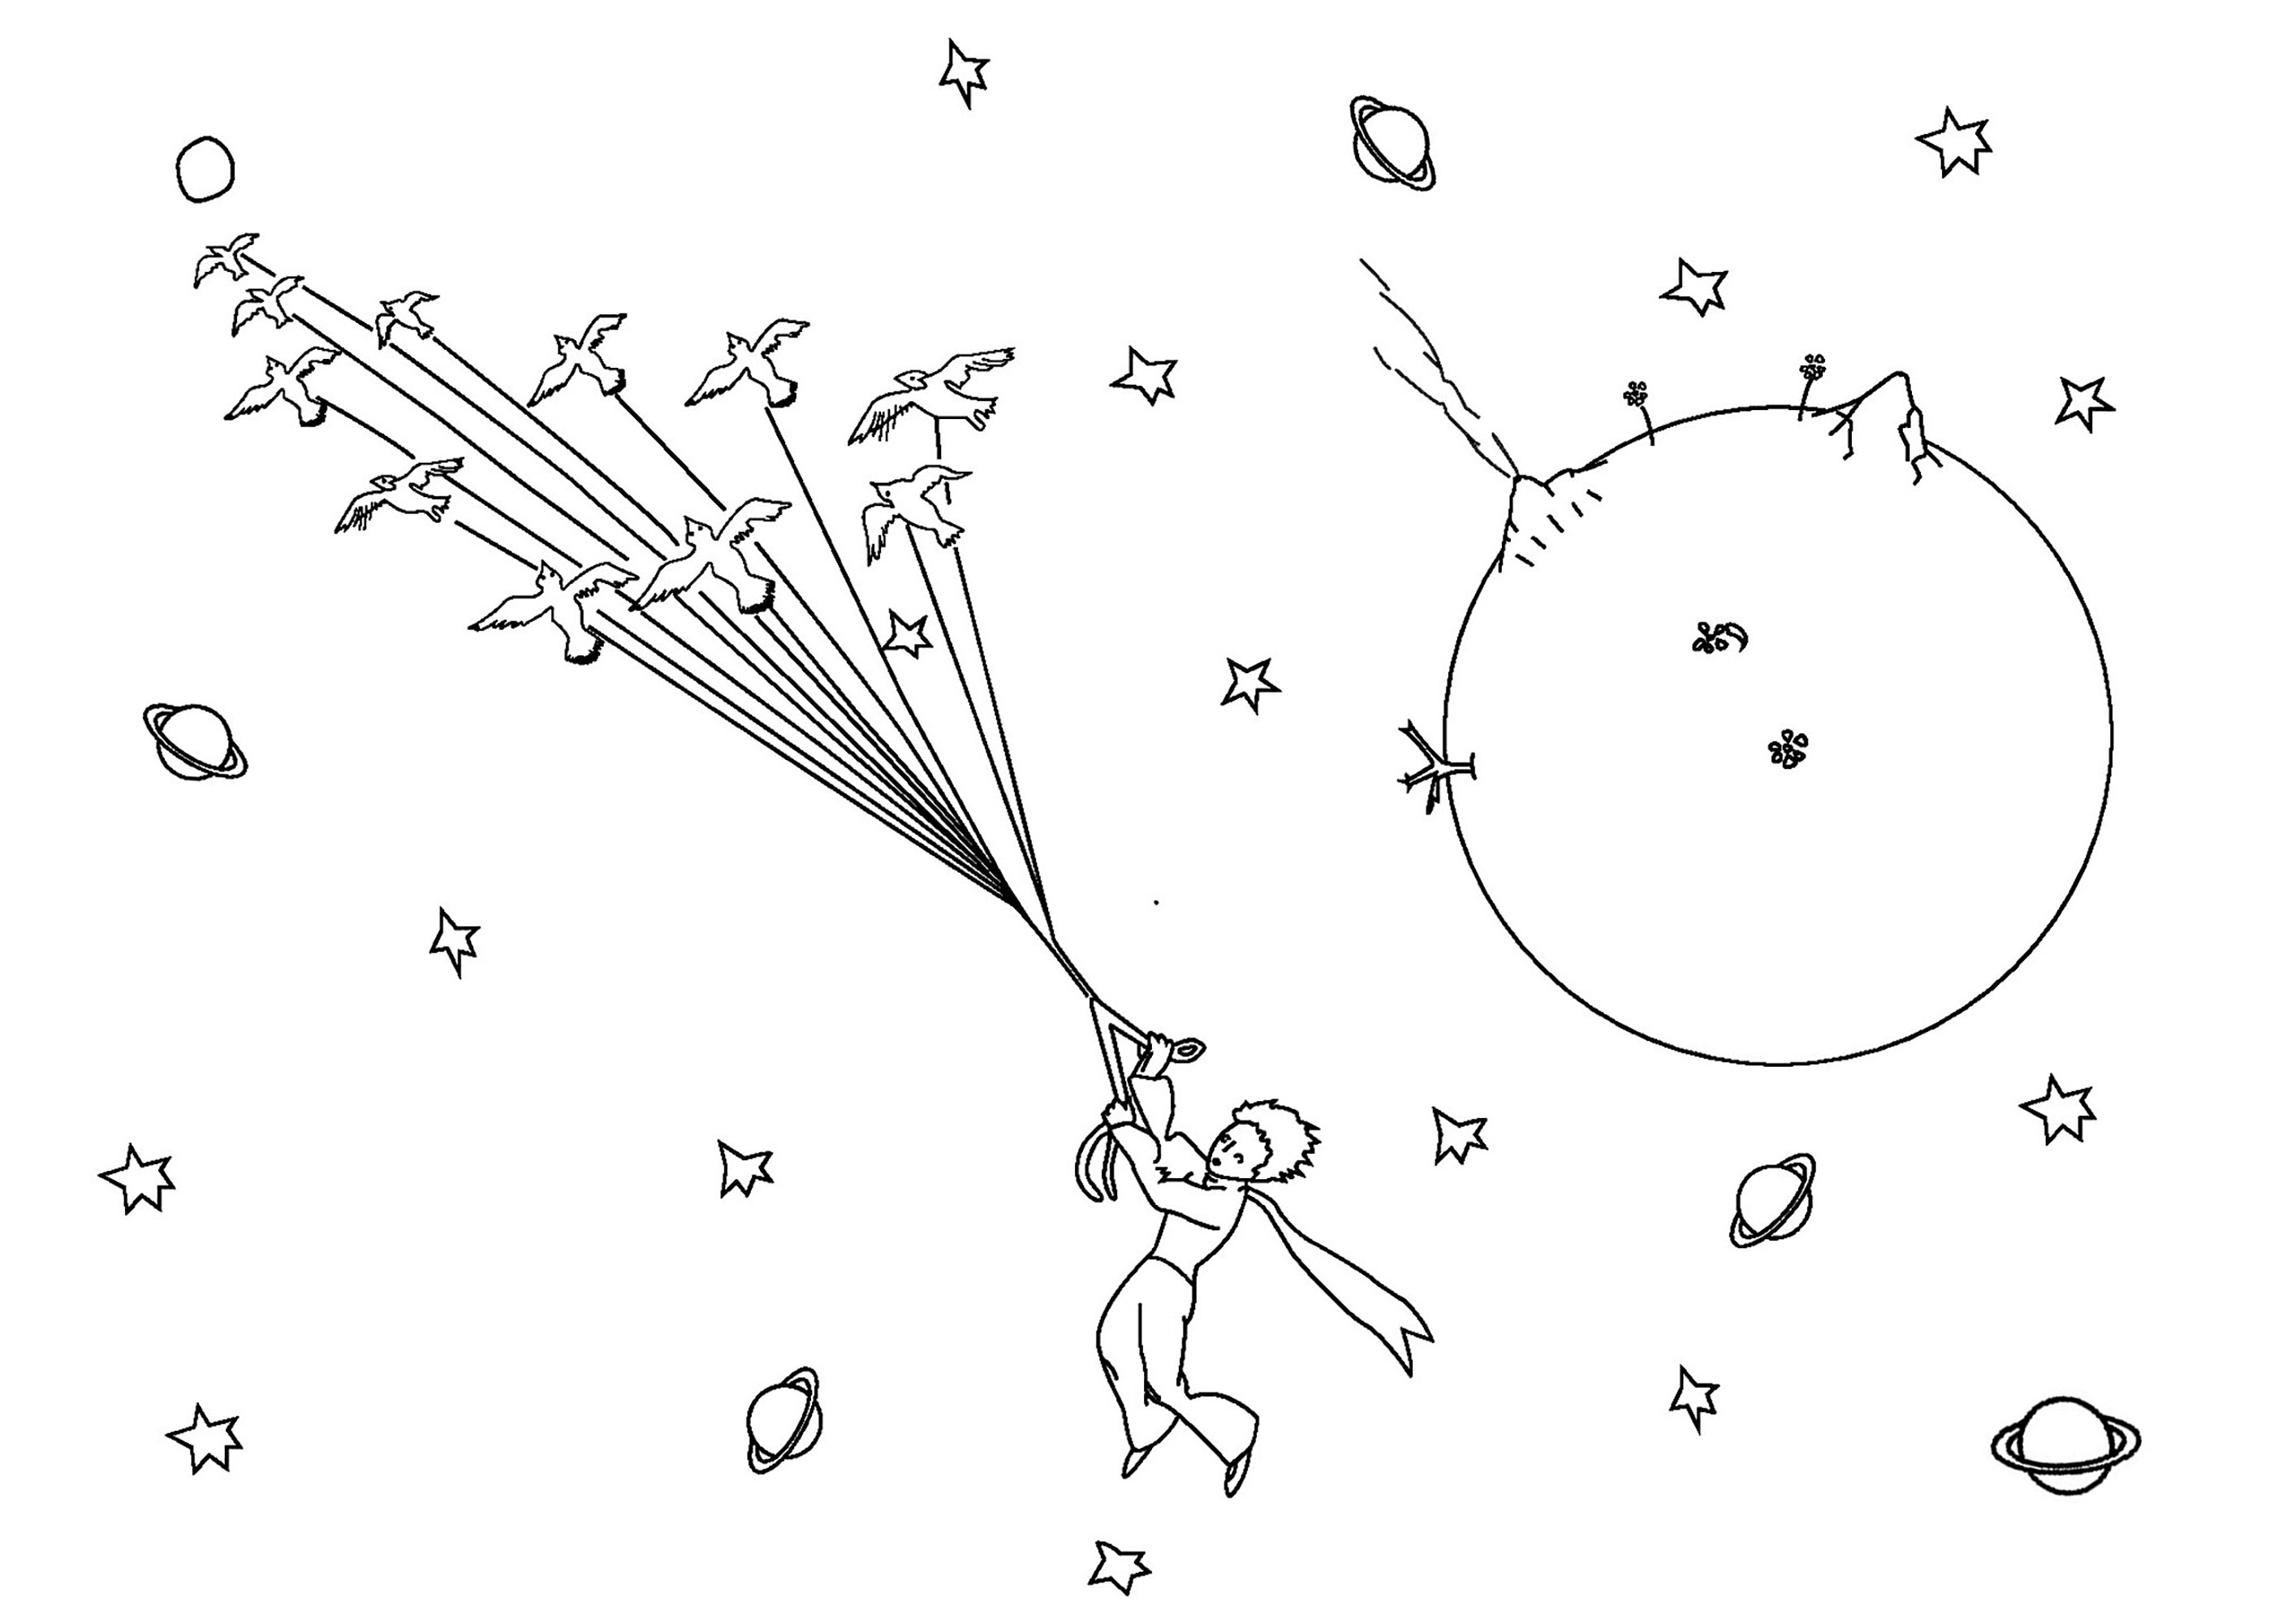 Le Petit Prince s'envole et navigue dans l'espace à côté d'une planète.  et au milieu d'étoiles et d'autres planètes lointaines